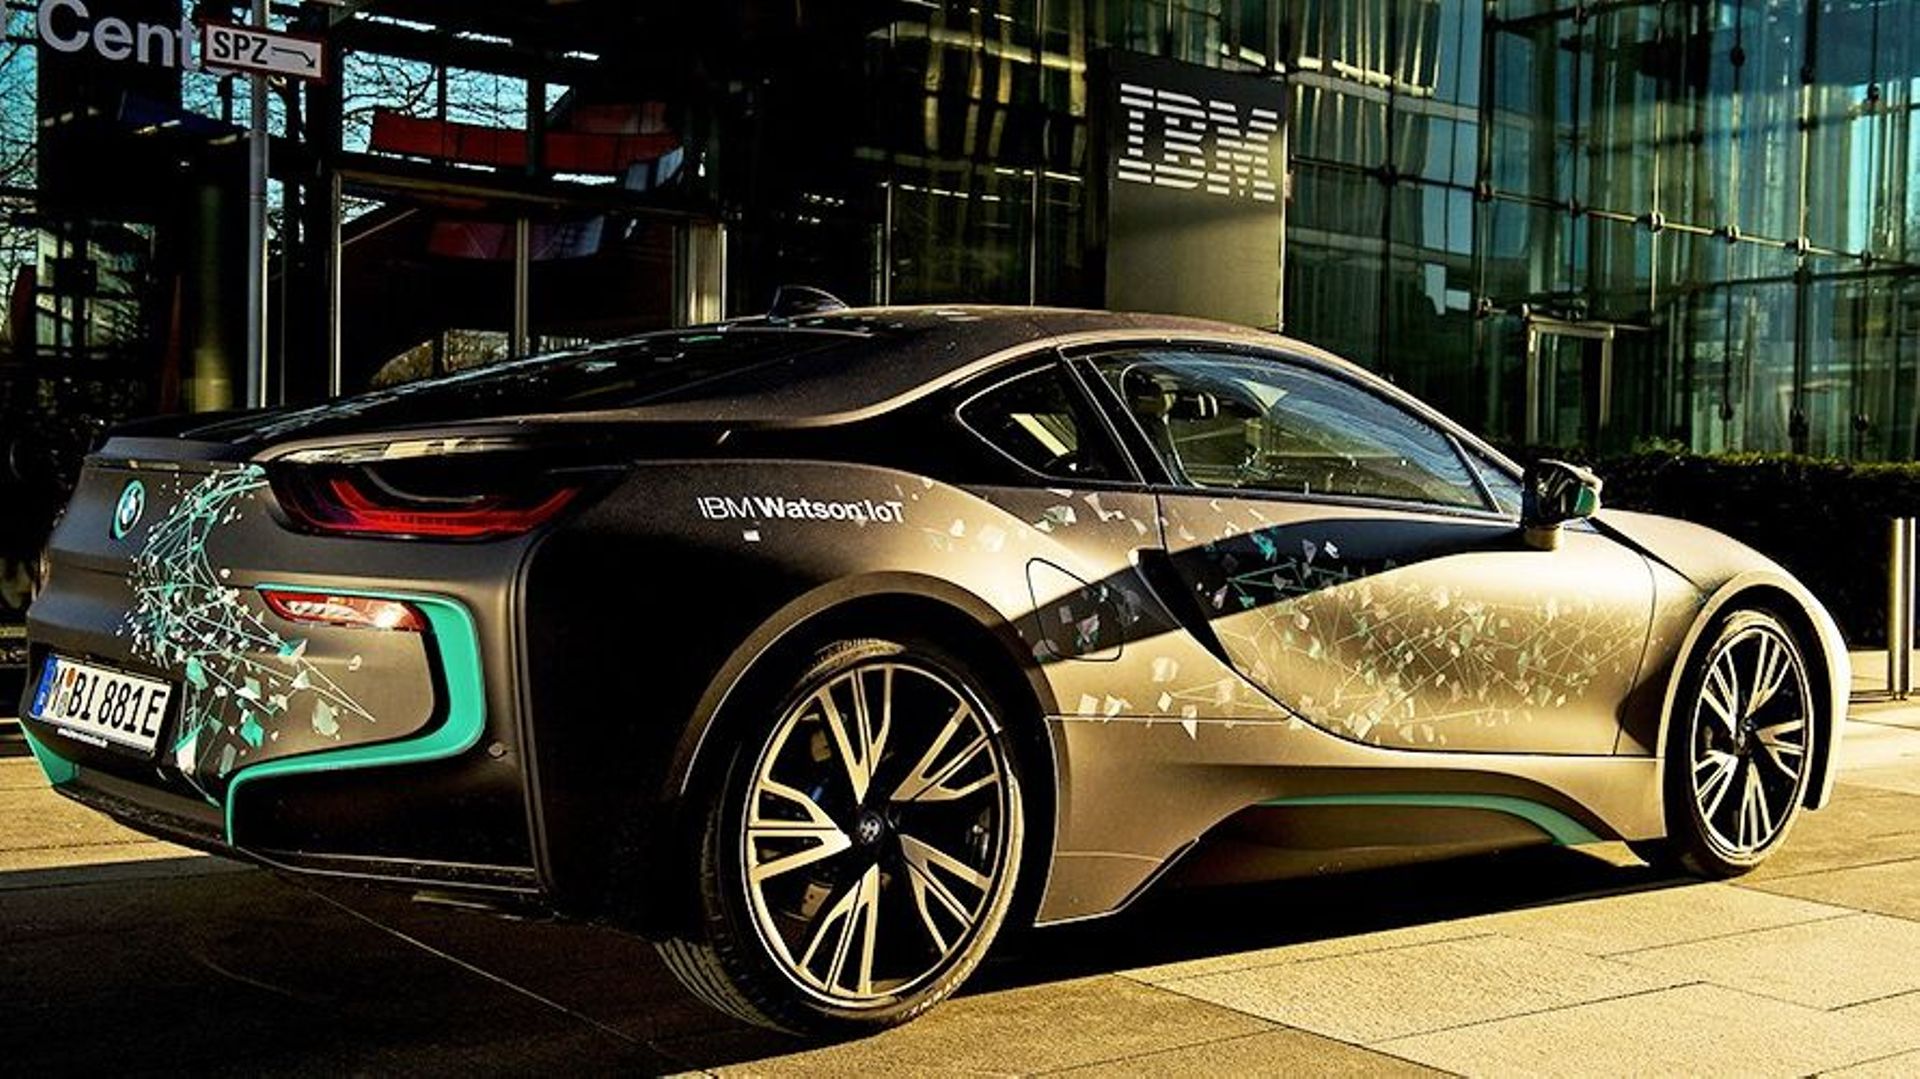 IBM et BMW font équipe pour créer une voiture intelligente